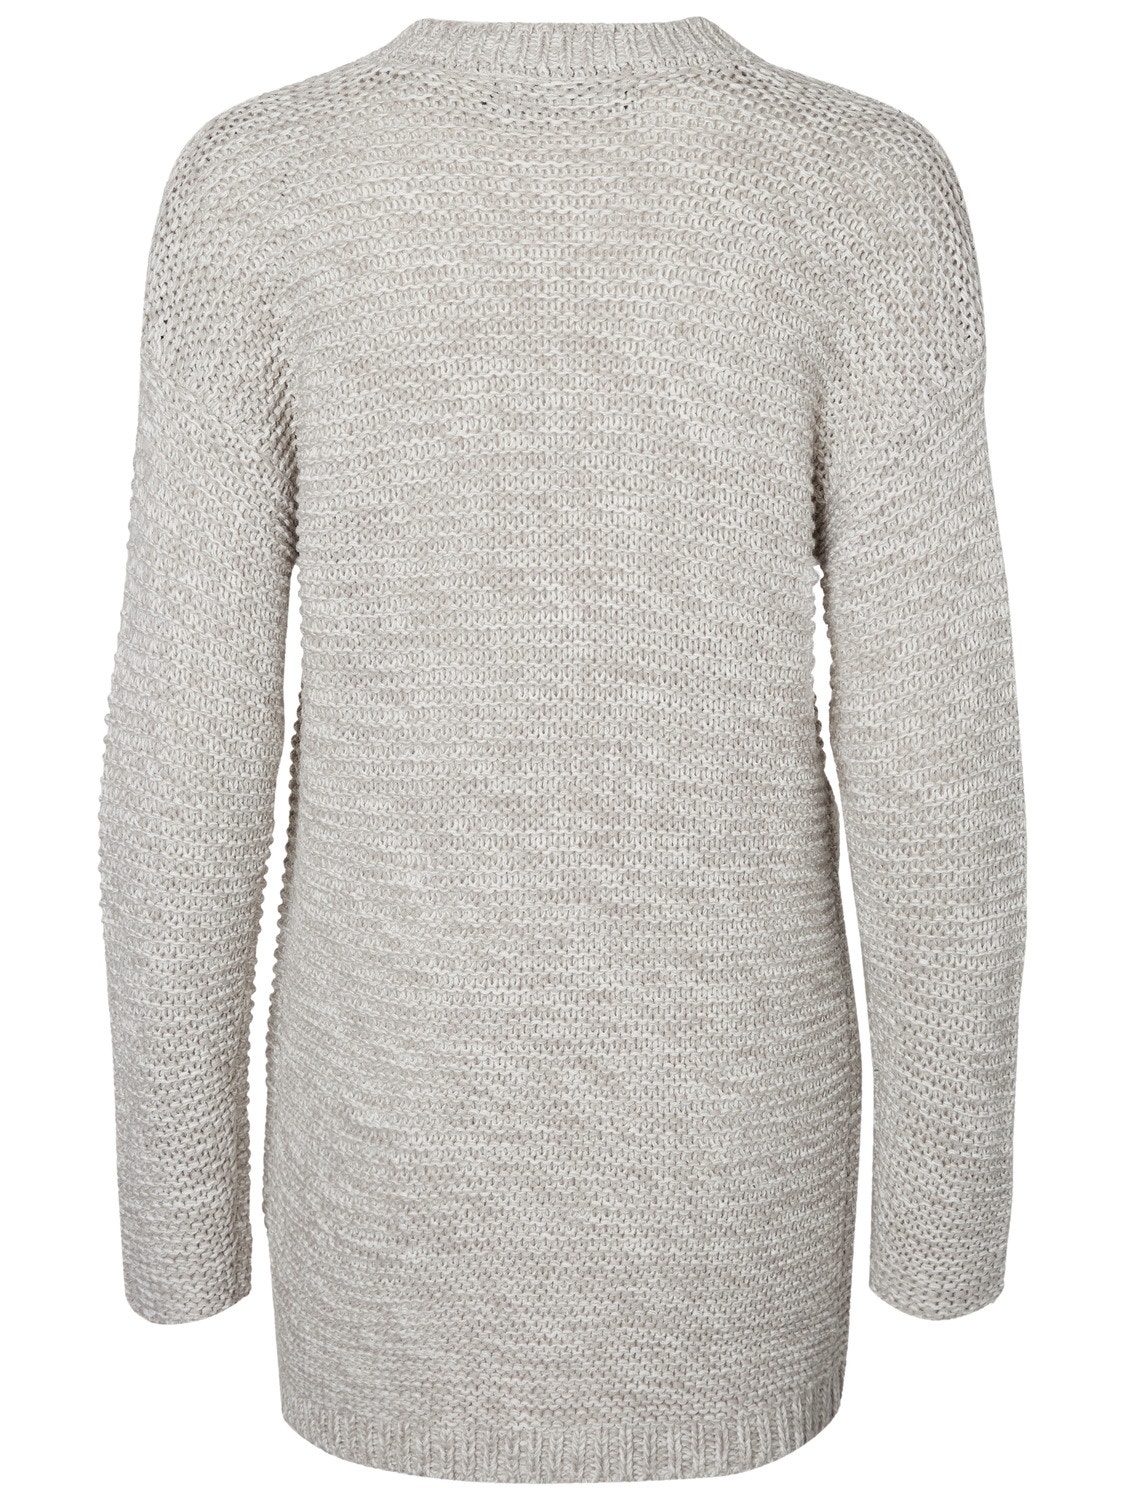 VMNO Knit Cardigan | Vero | Moda® Grey Light